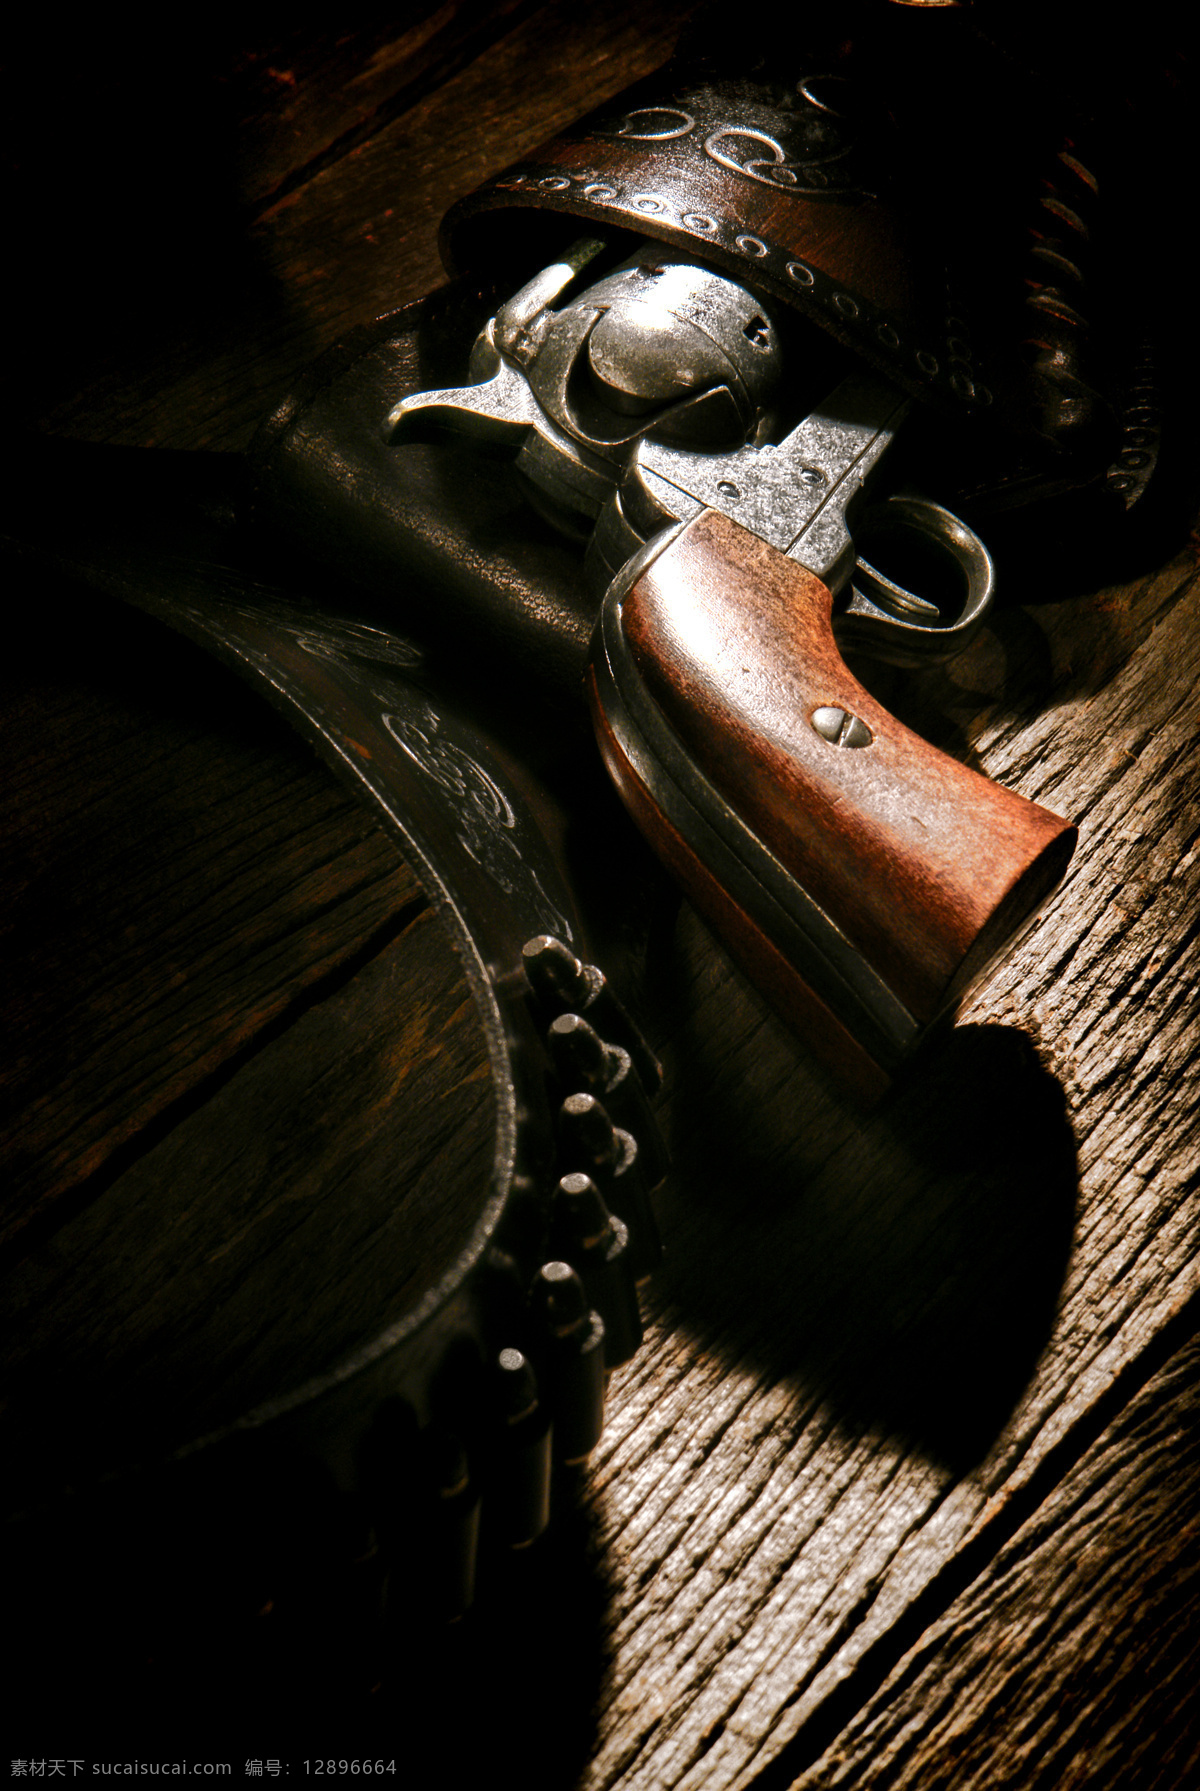 木板 上 枪支 子弹 手枪 木板背景 西部牛仔 木板上的枪支 其他类别 生活百科